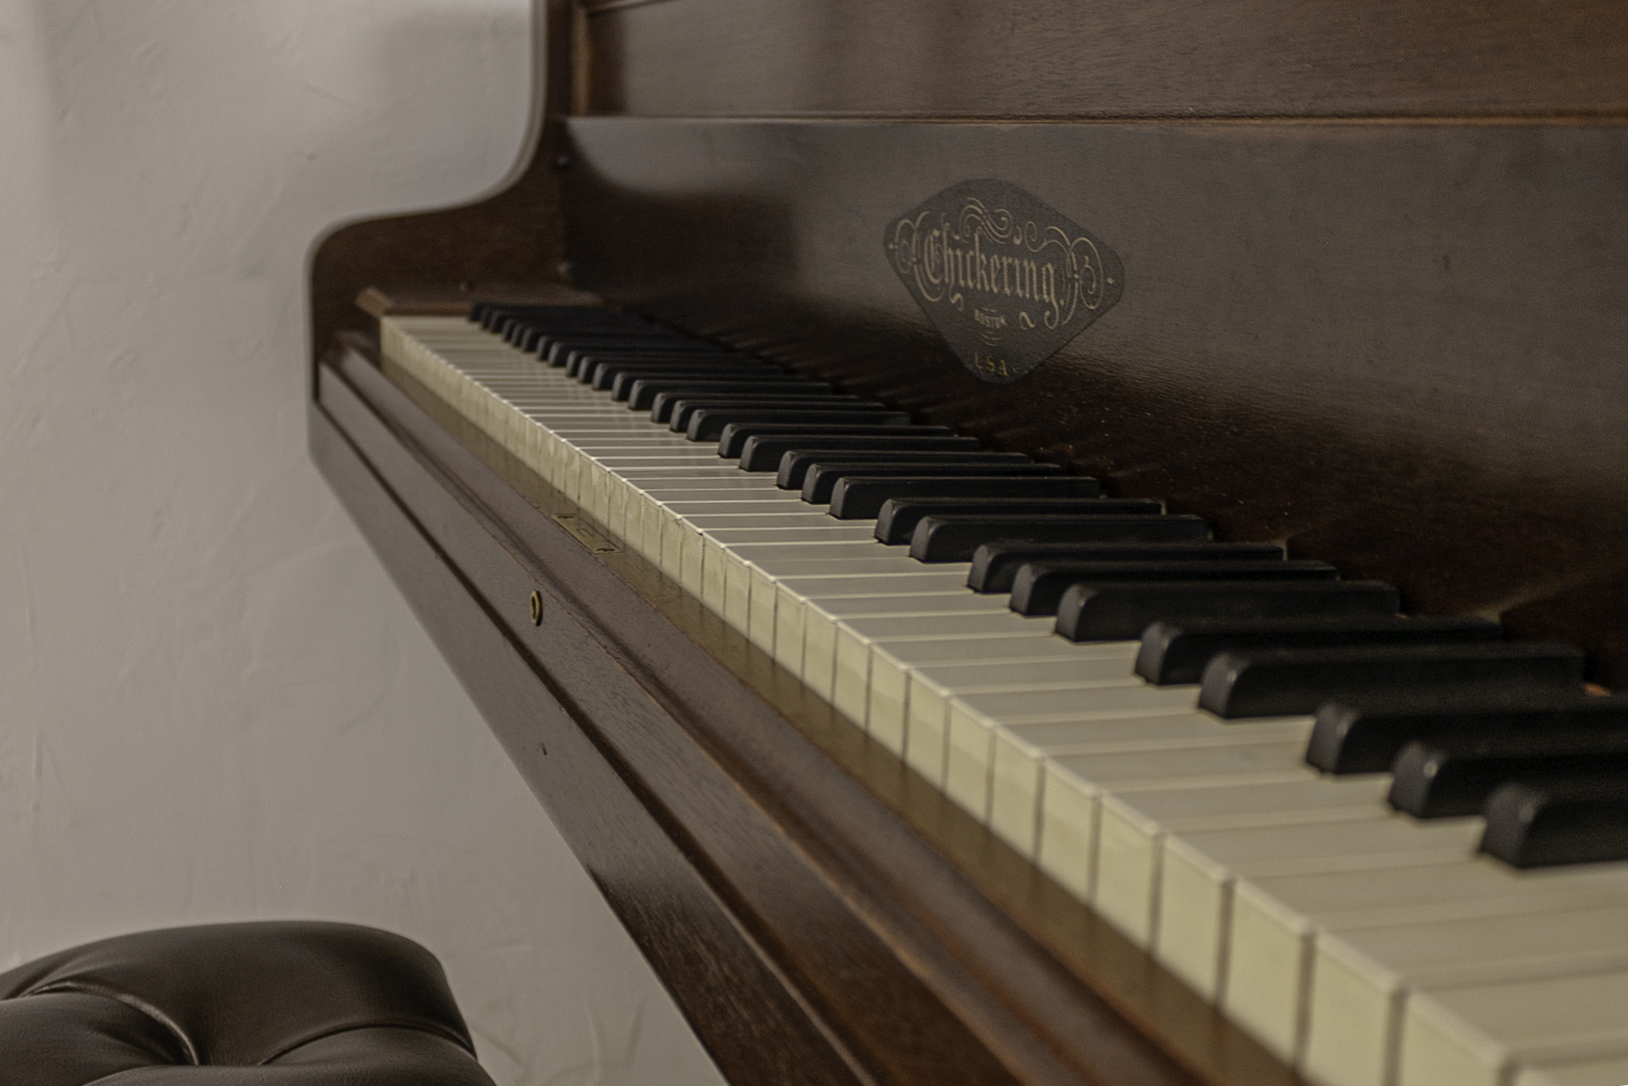 pianokeyboard closeup shot